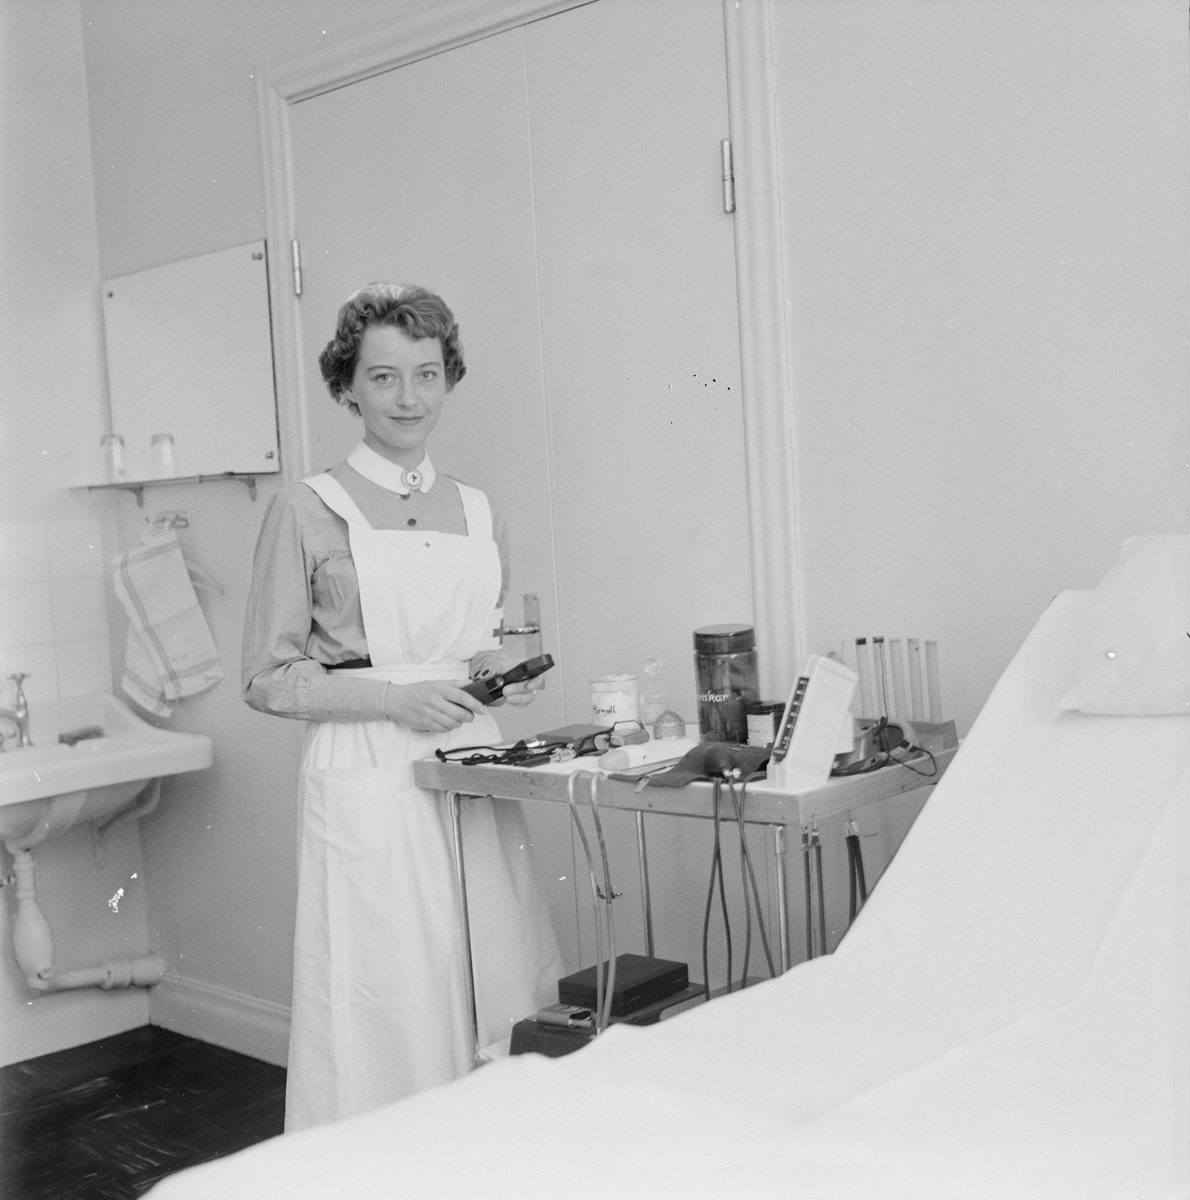 Akademiska sjukhuset, medicinska kliniken, "sockersjuka, fetma, gikt skall bjudas liten bricka", Uppsala, april 1959